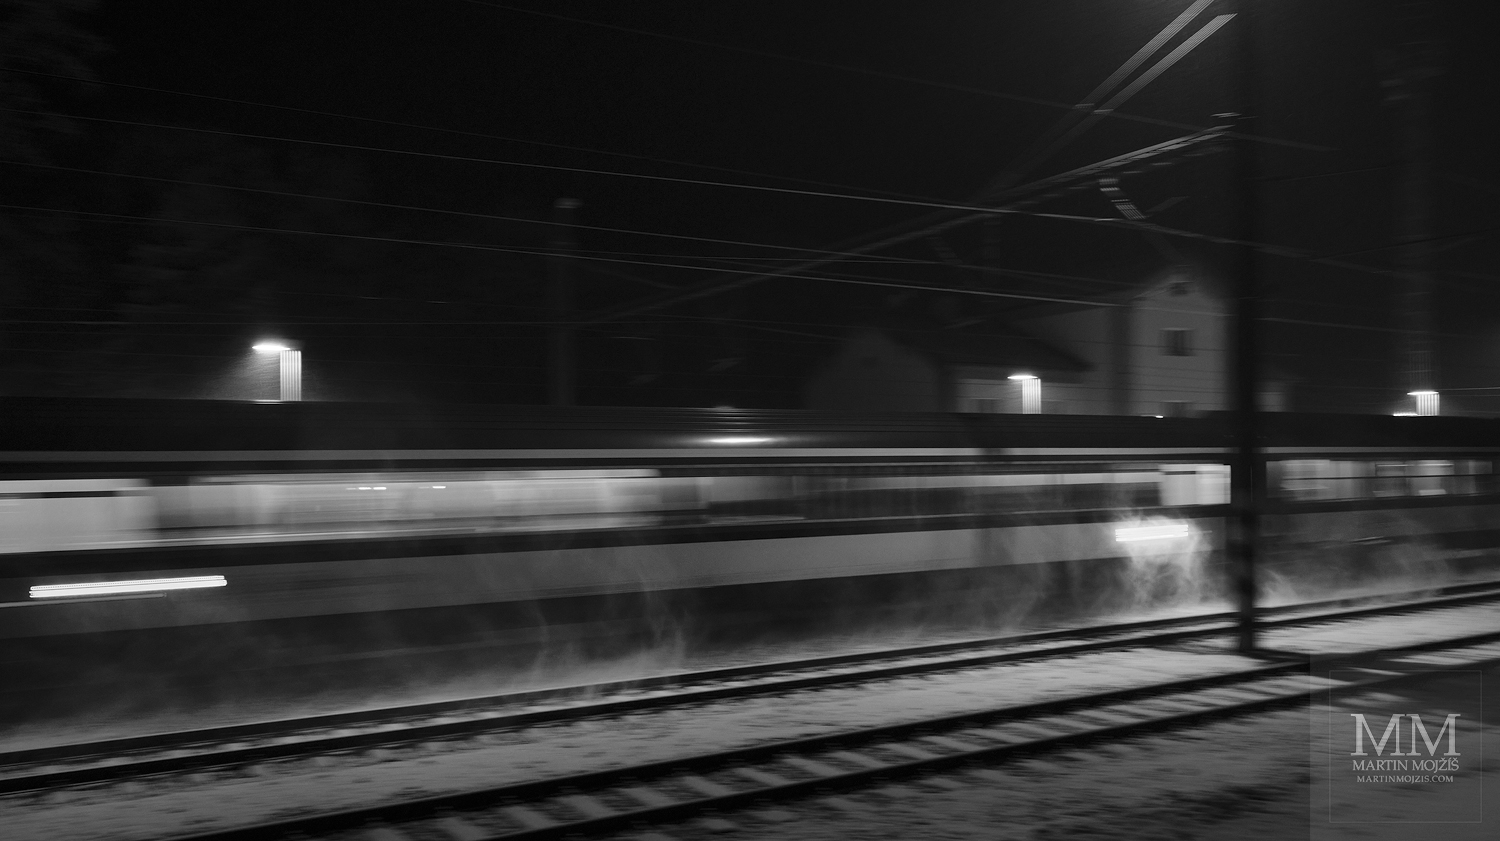 Noční vlak jedoucí po osvětlené zasněžené trati. Umělecká černobílá fotografie s názvem ZASNĚŽENOU NOCÍ II. Fotograf Martin Mojžíš.